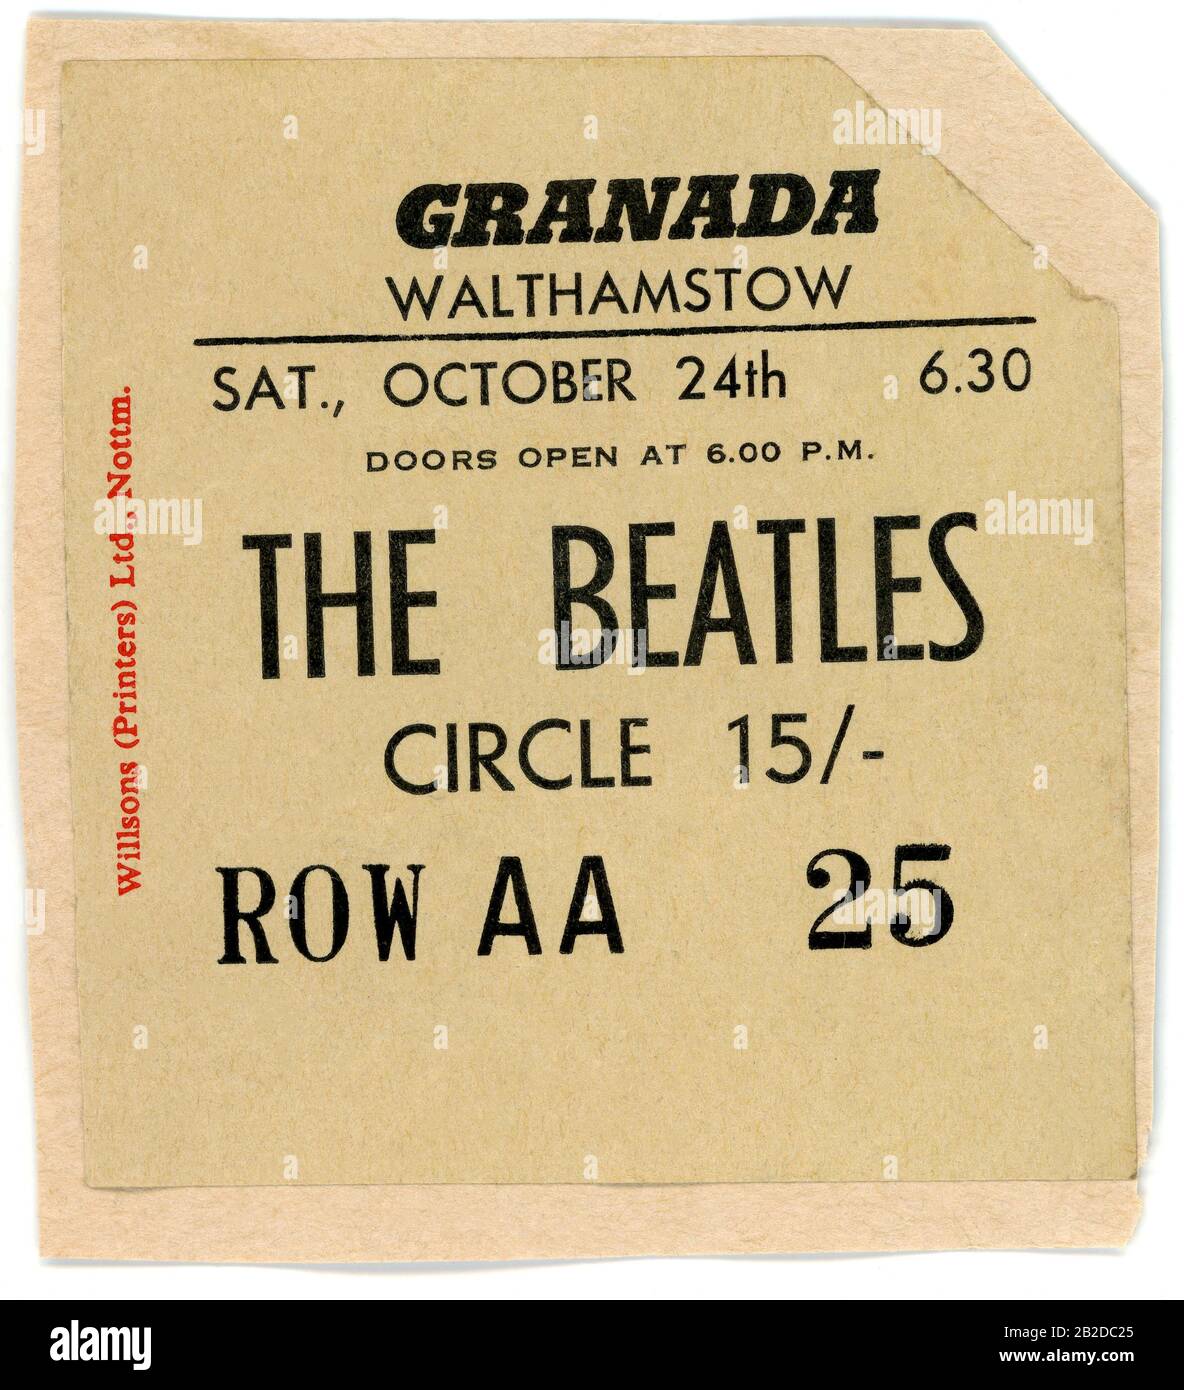 Londres, ROYAUME-UNI - 24 OCTOBRE: La vie d'un porte-billets des Beatles pour leur concert au cinéma de Grenade le 24 octobre 1964 à Walthamstow, Londres, Angleterre, Royaume-Uni.Credit: Icône et image / MediaPunch Banque D'Images